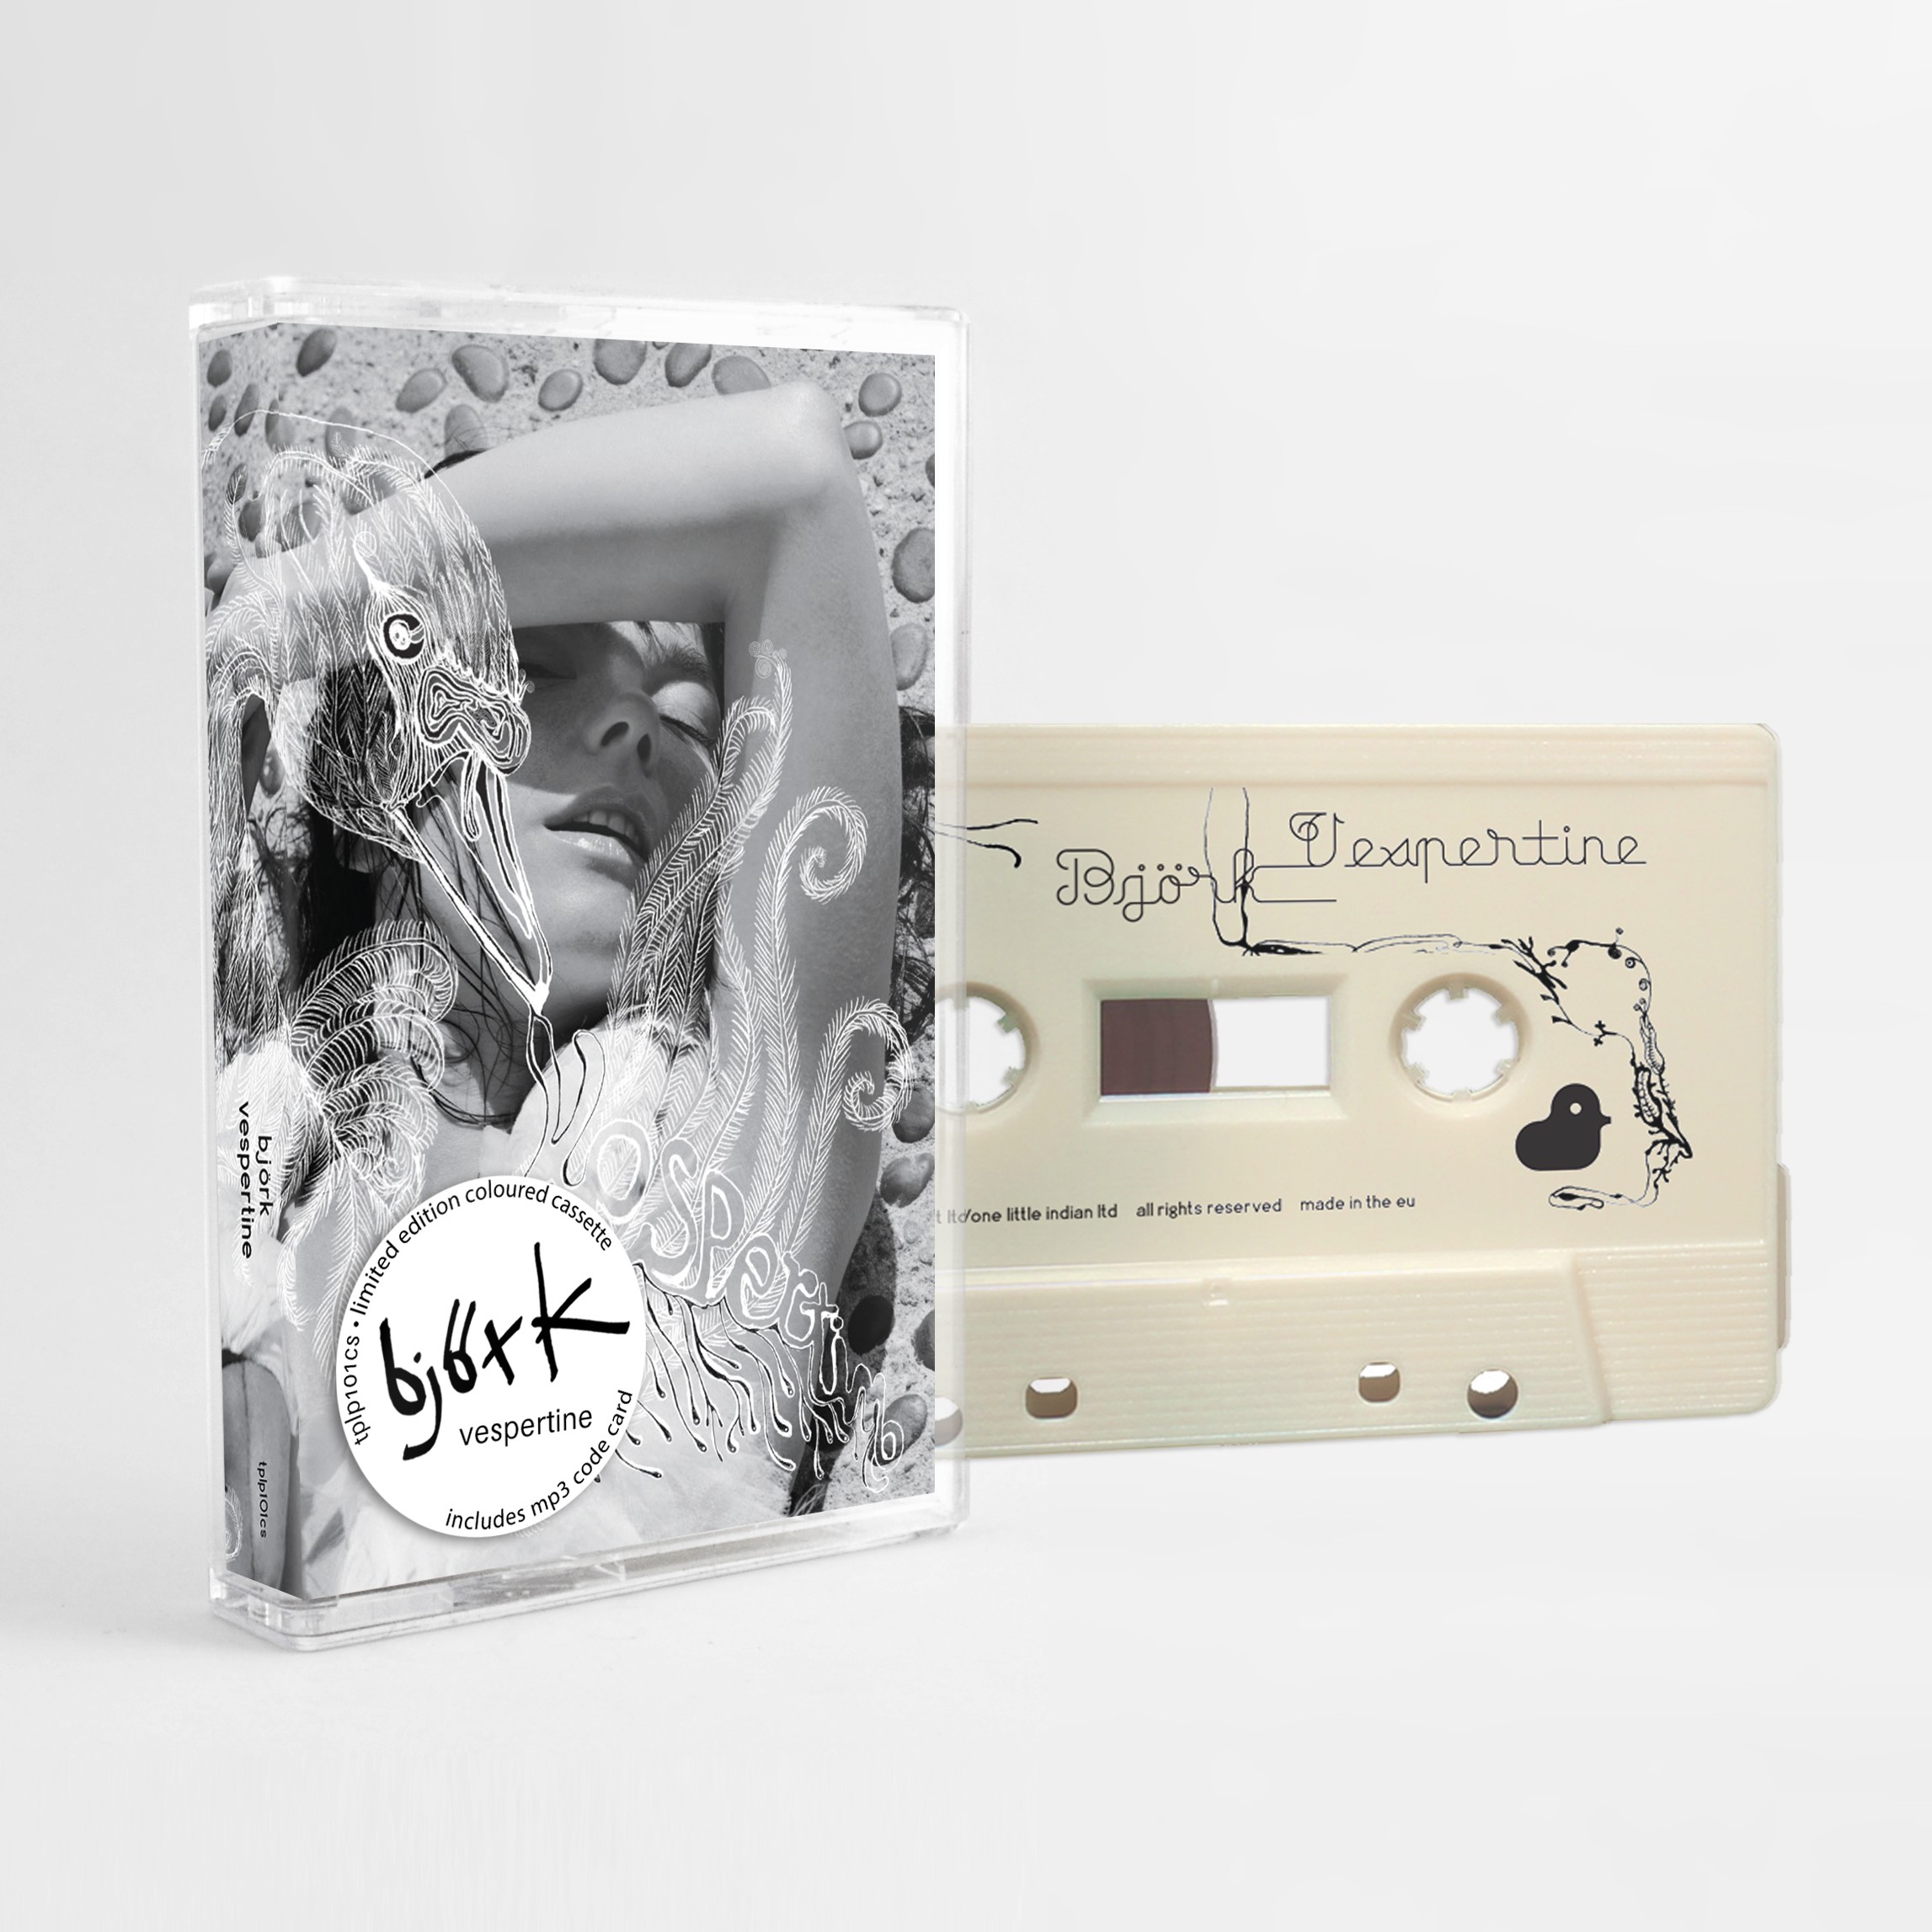 Back to the 80s like... Björk relanzará todos sus discos en formato casete